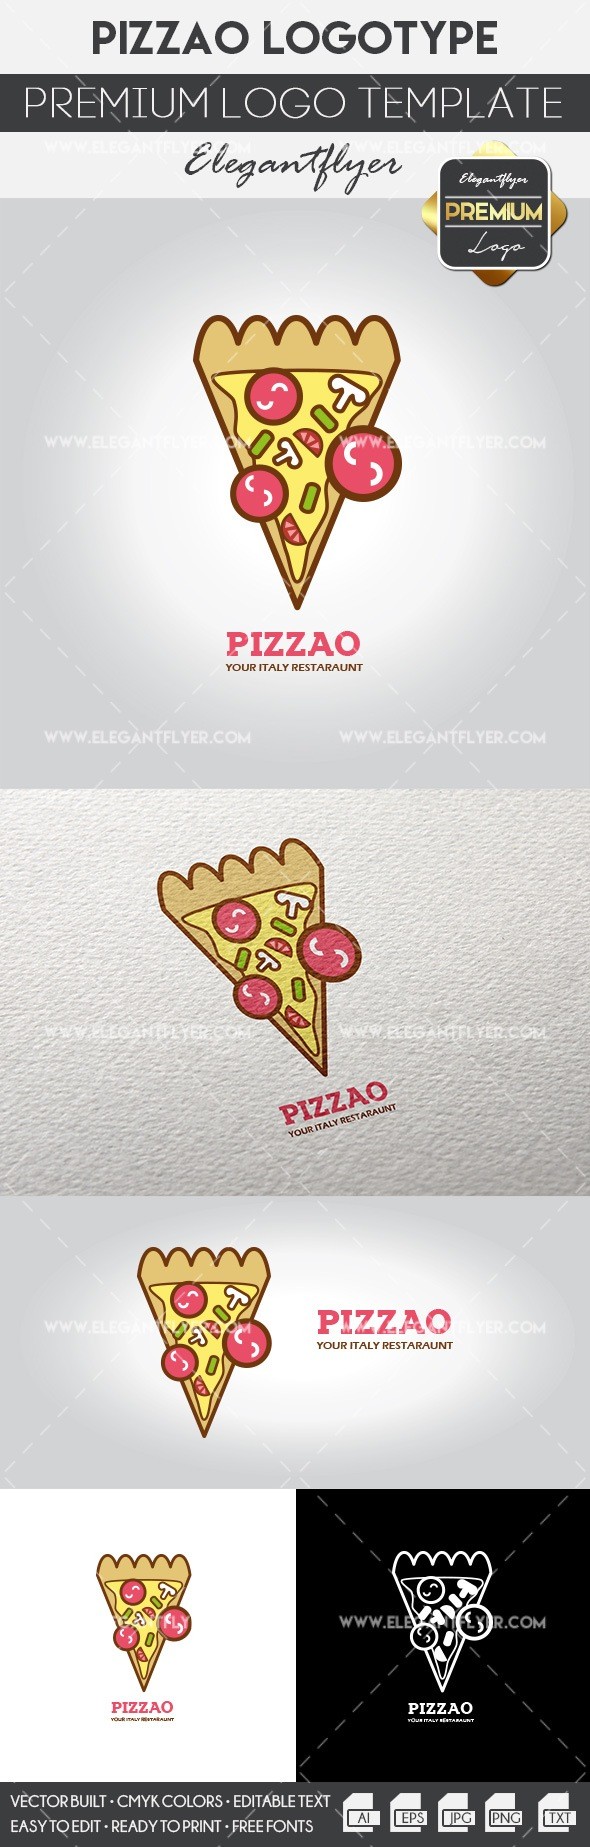 Pizzaria by ElegantFlyer